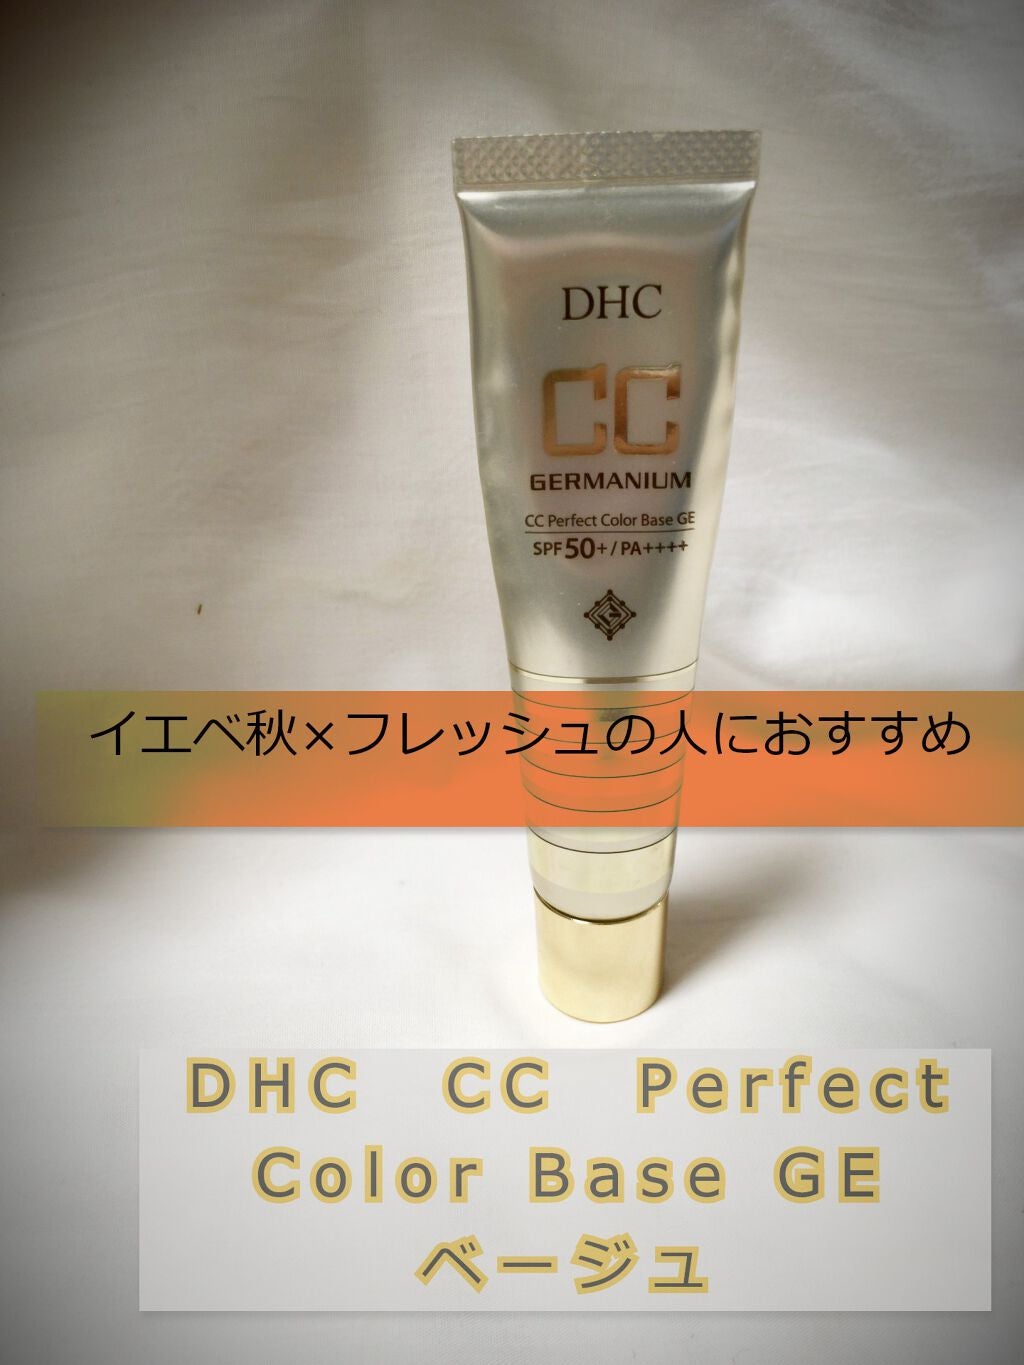 DHC CCパーフェクトカラーベースge - CCクリーム